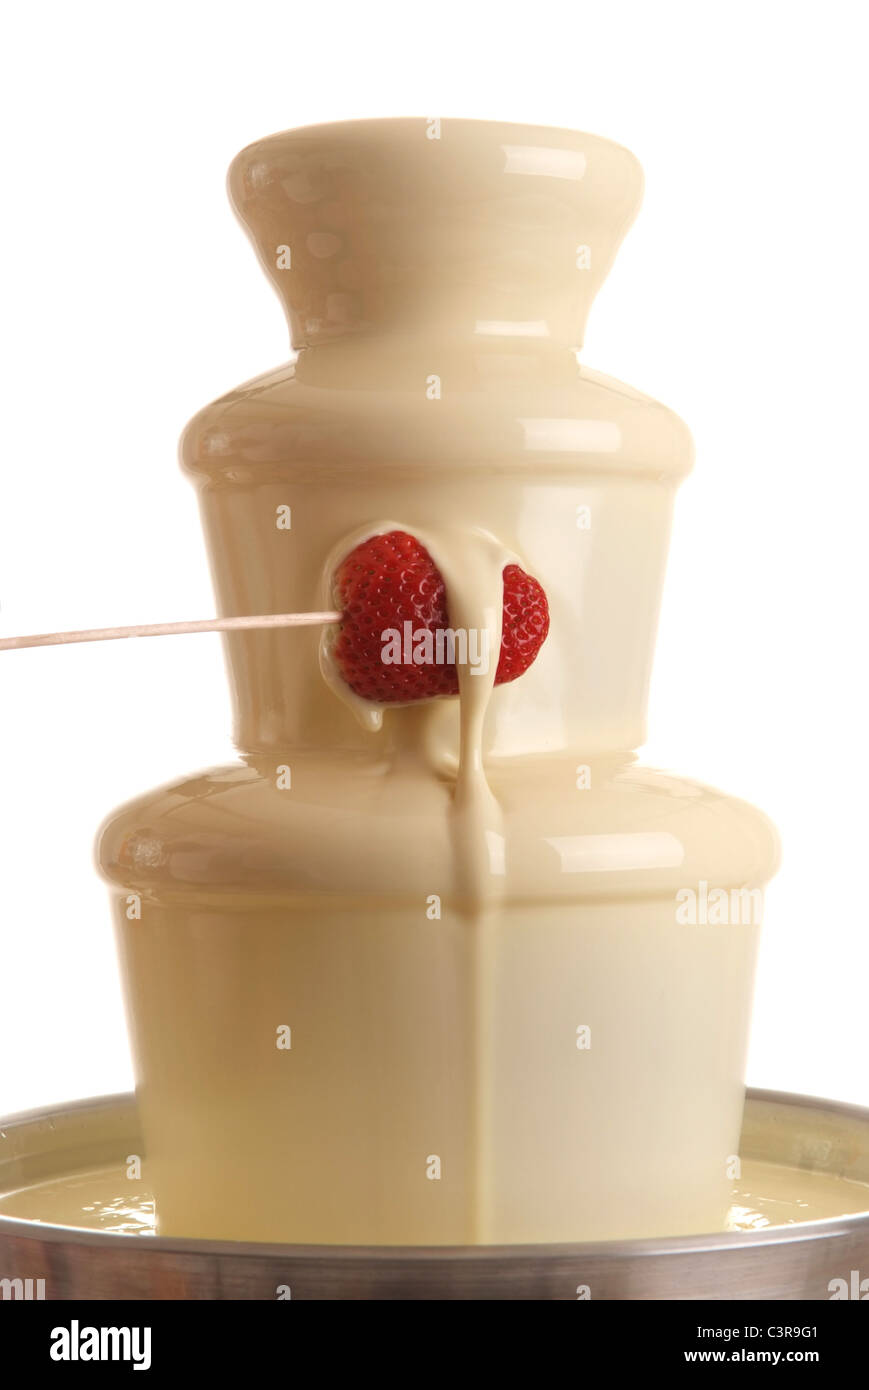 Fontaine de chocolat blanc avec fraise Photo Stock - Alamy